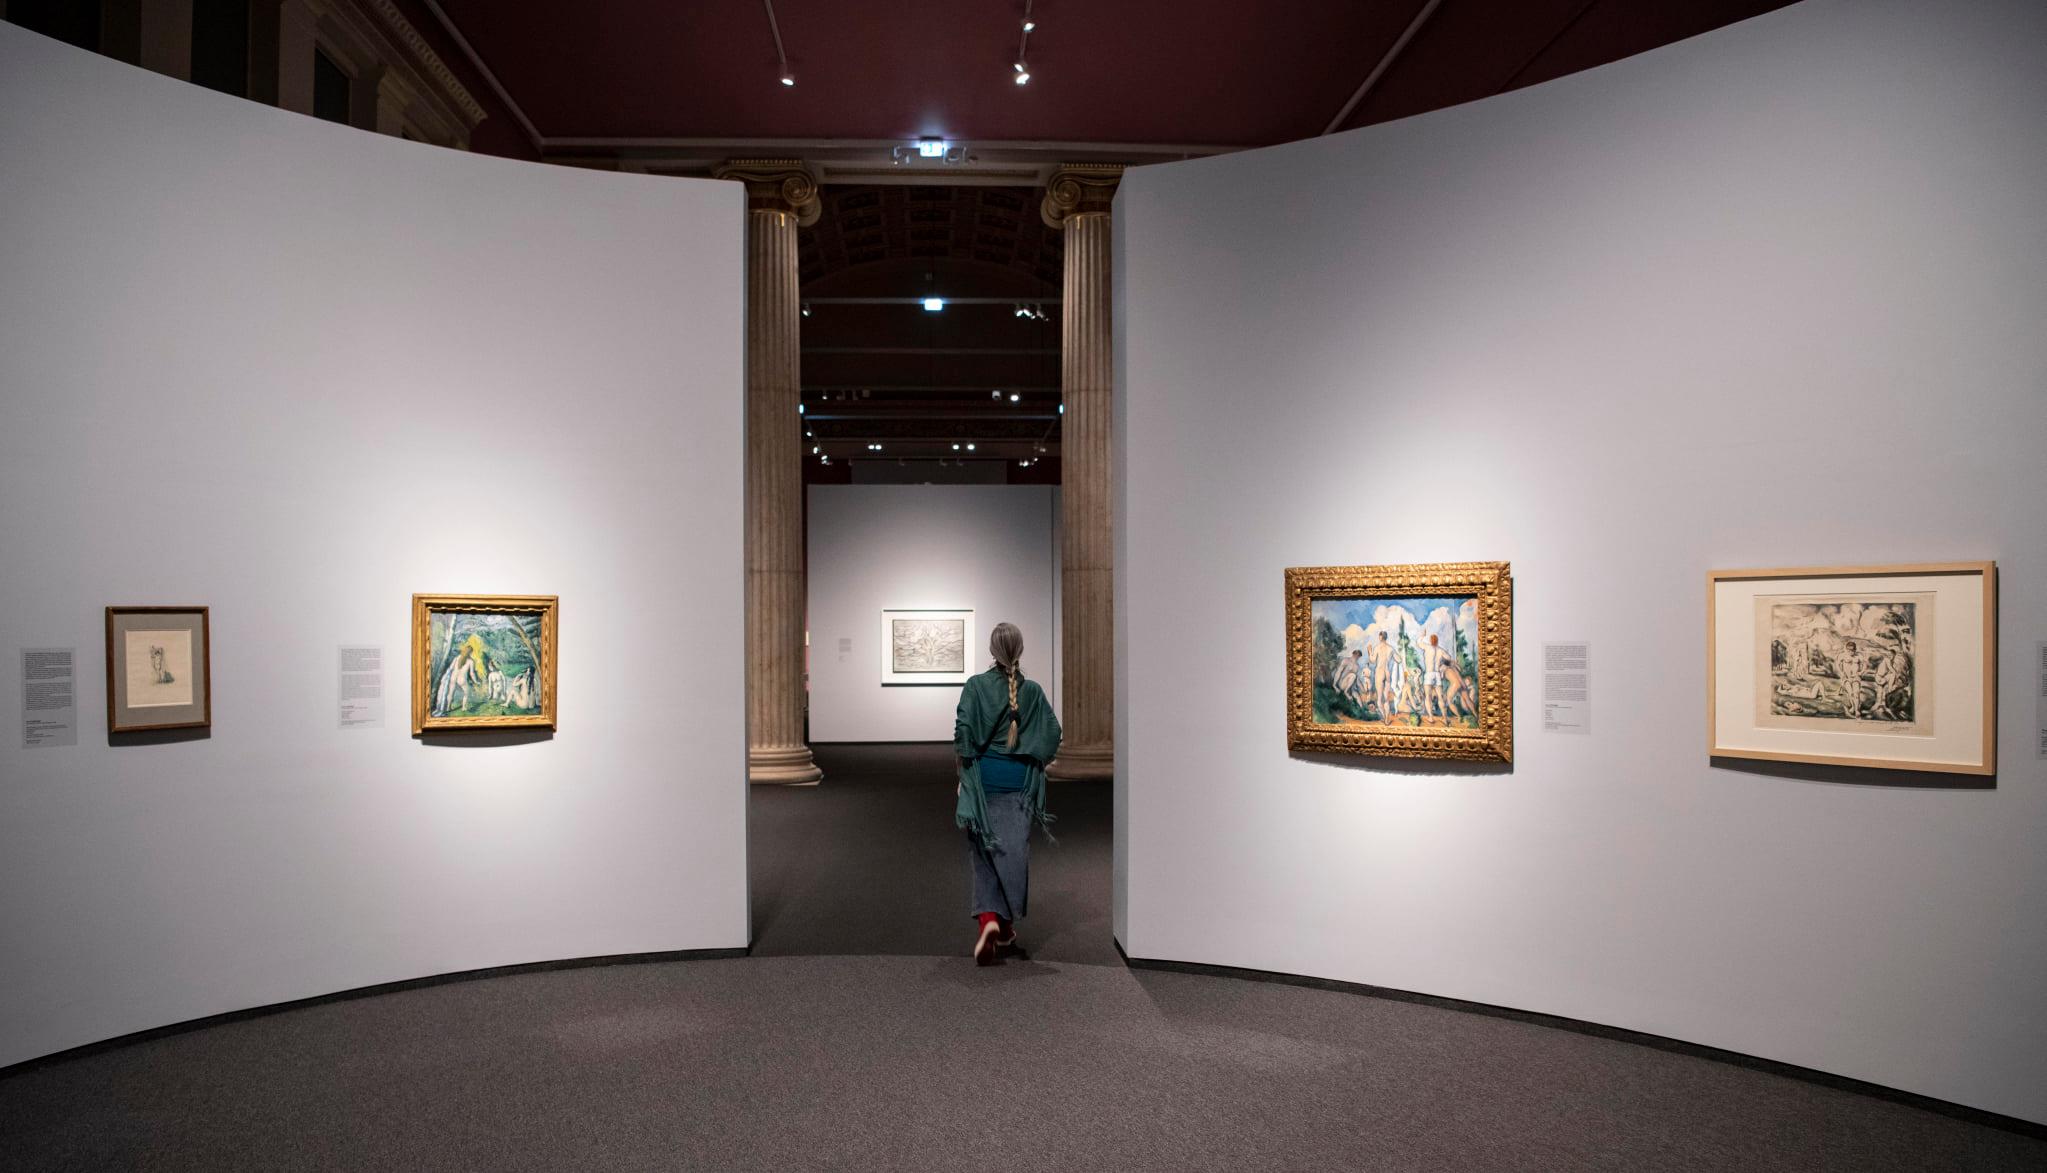 Hogyan lett az erdőből vonalrengeteg? – Megnéztük a Szépművészeti Múzeum Cezanne-tól Malevicsig című kiállítását